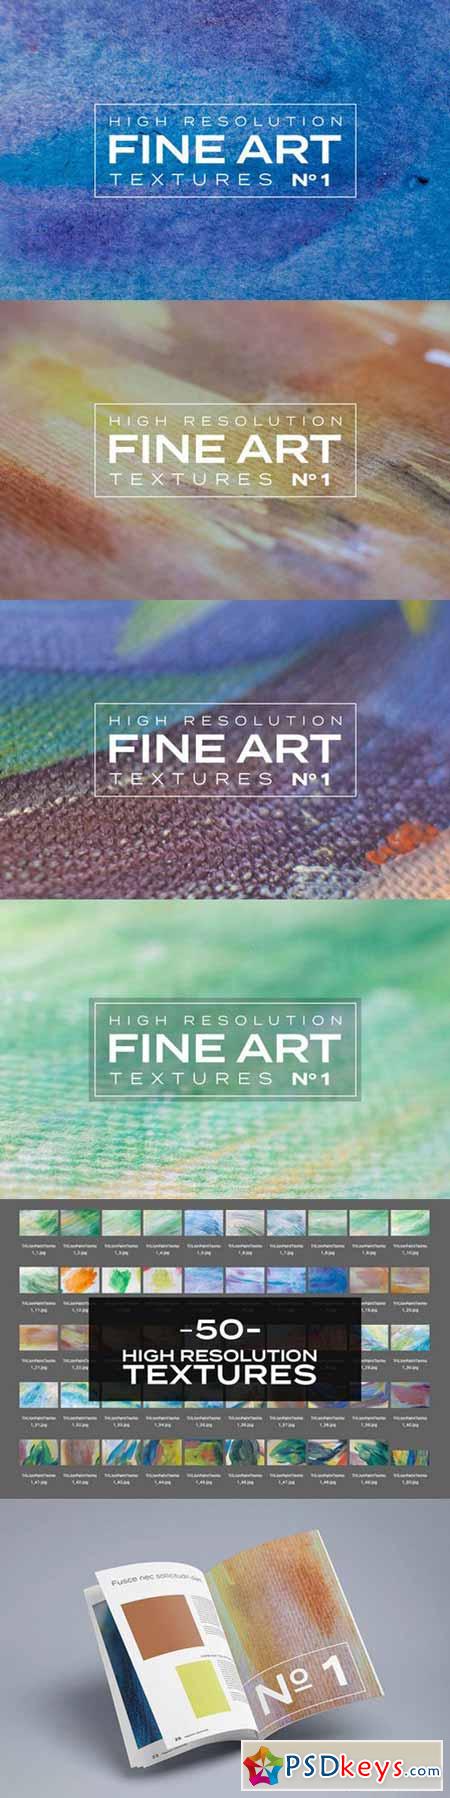 High Resolution Fine Art Textures #1 586840